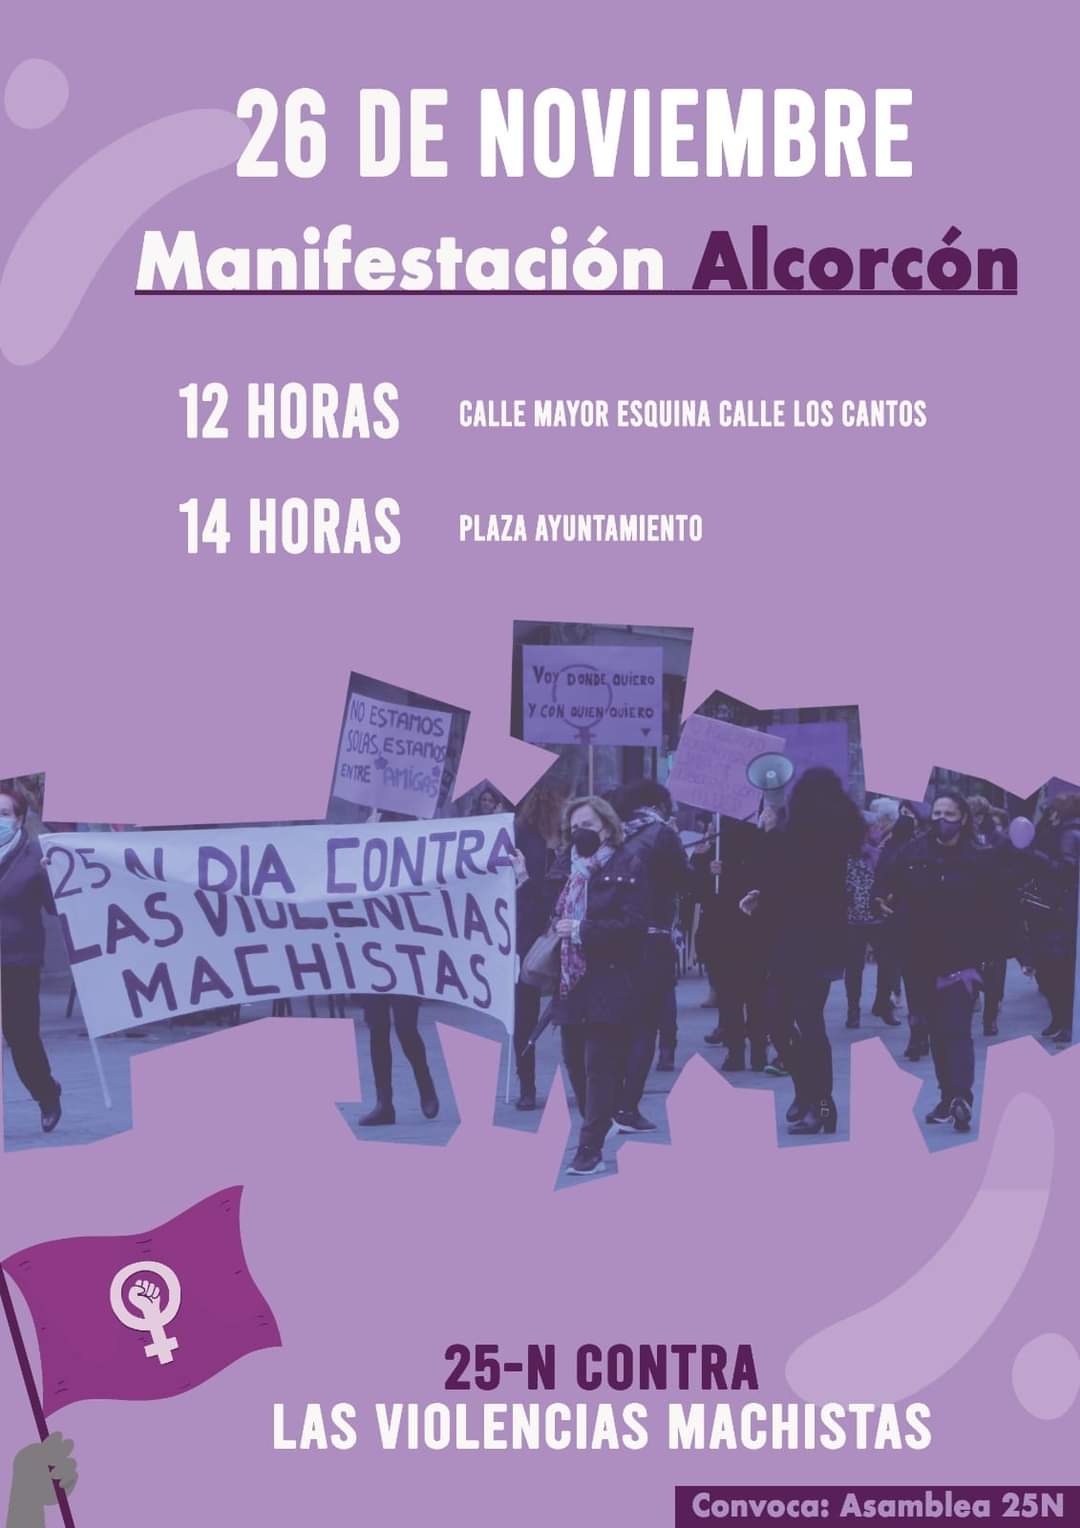 Convocada una manifestación feminista en Alcorcón